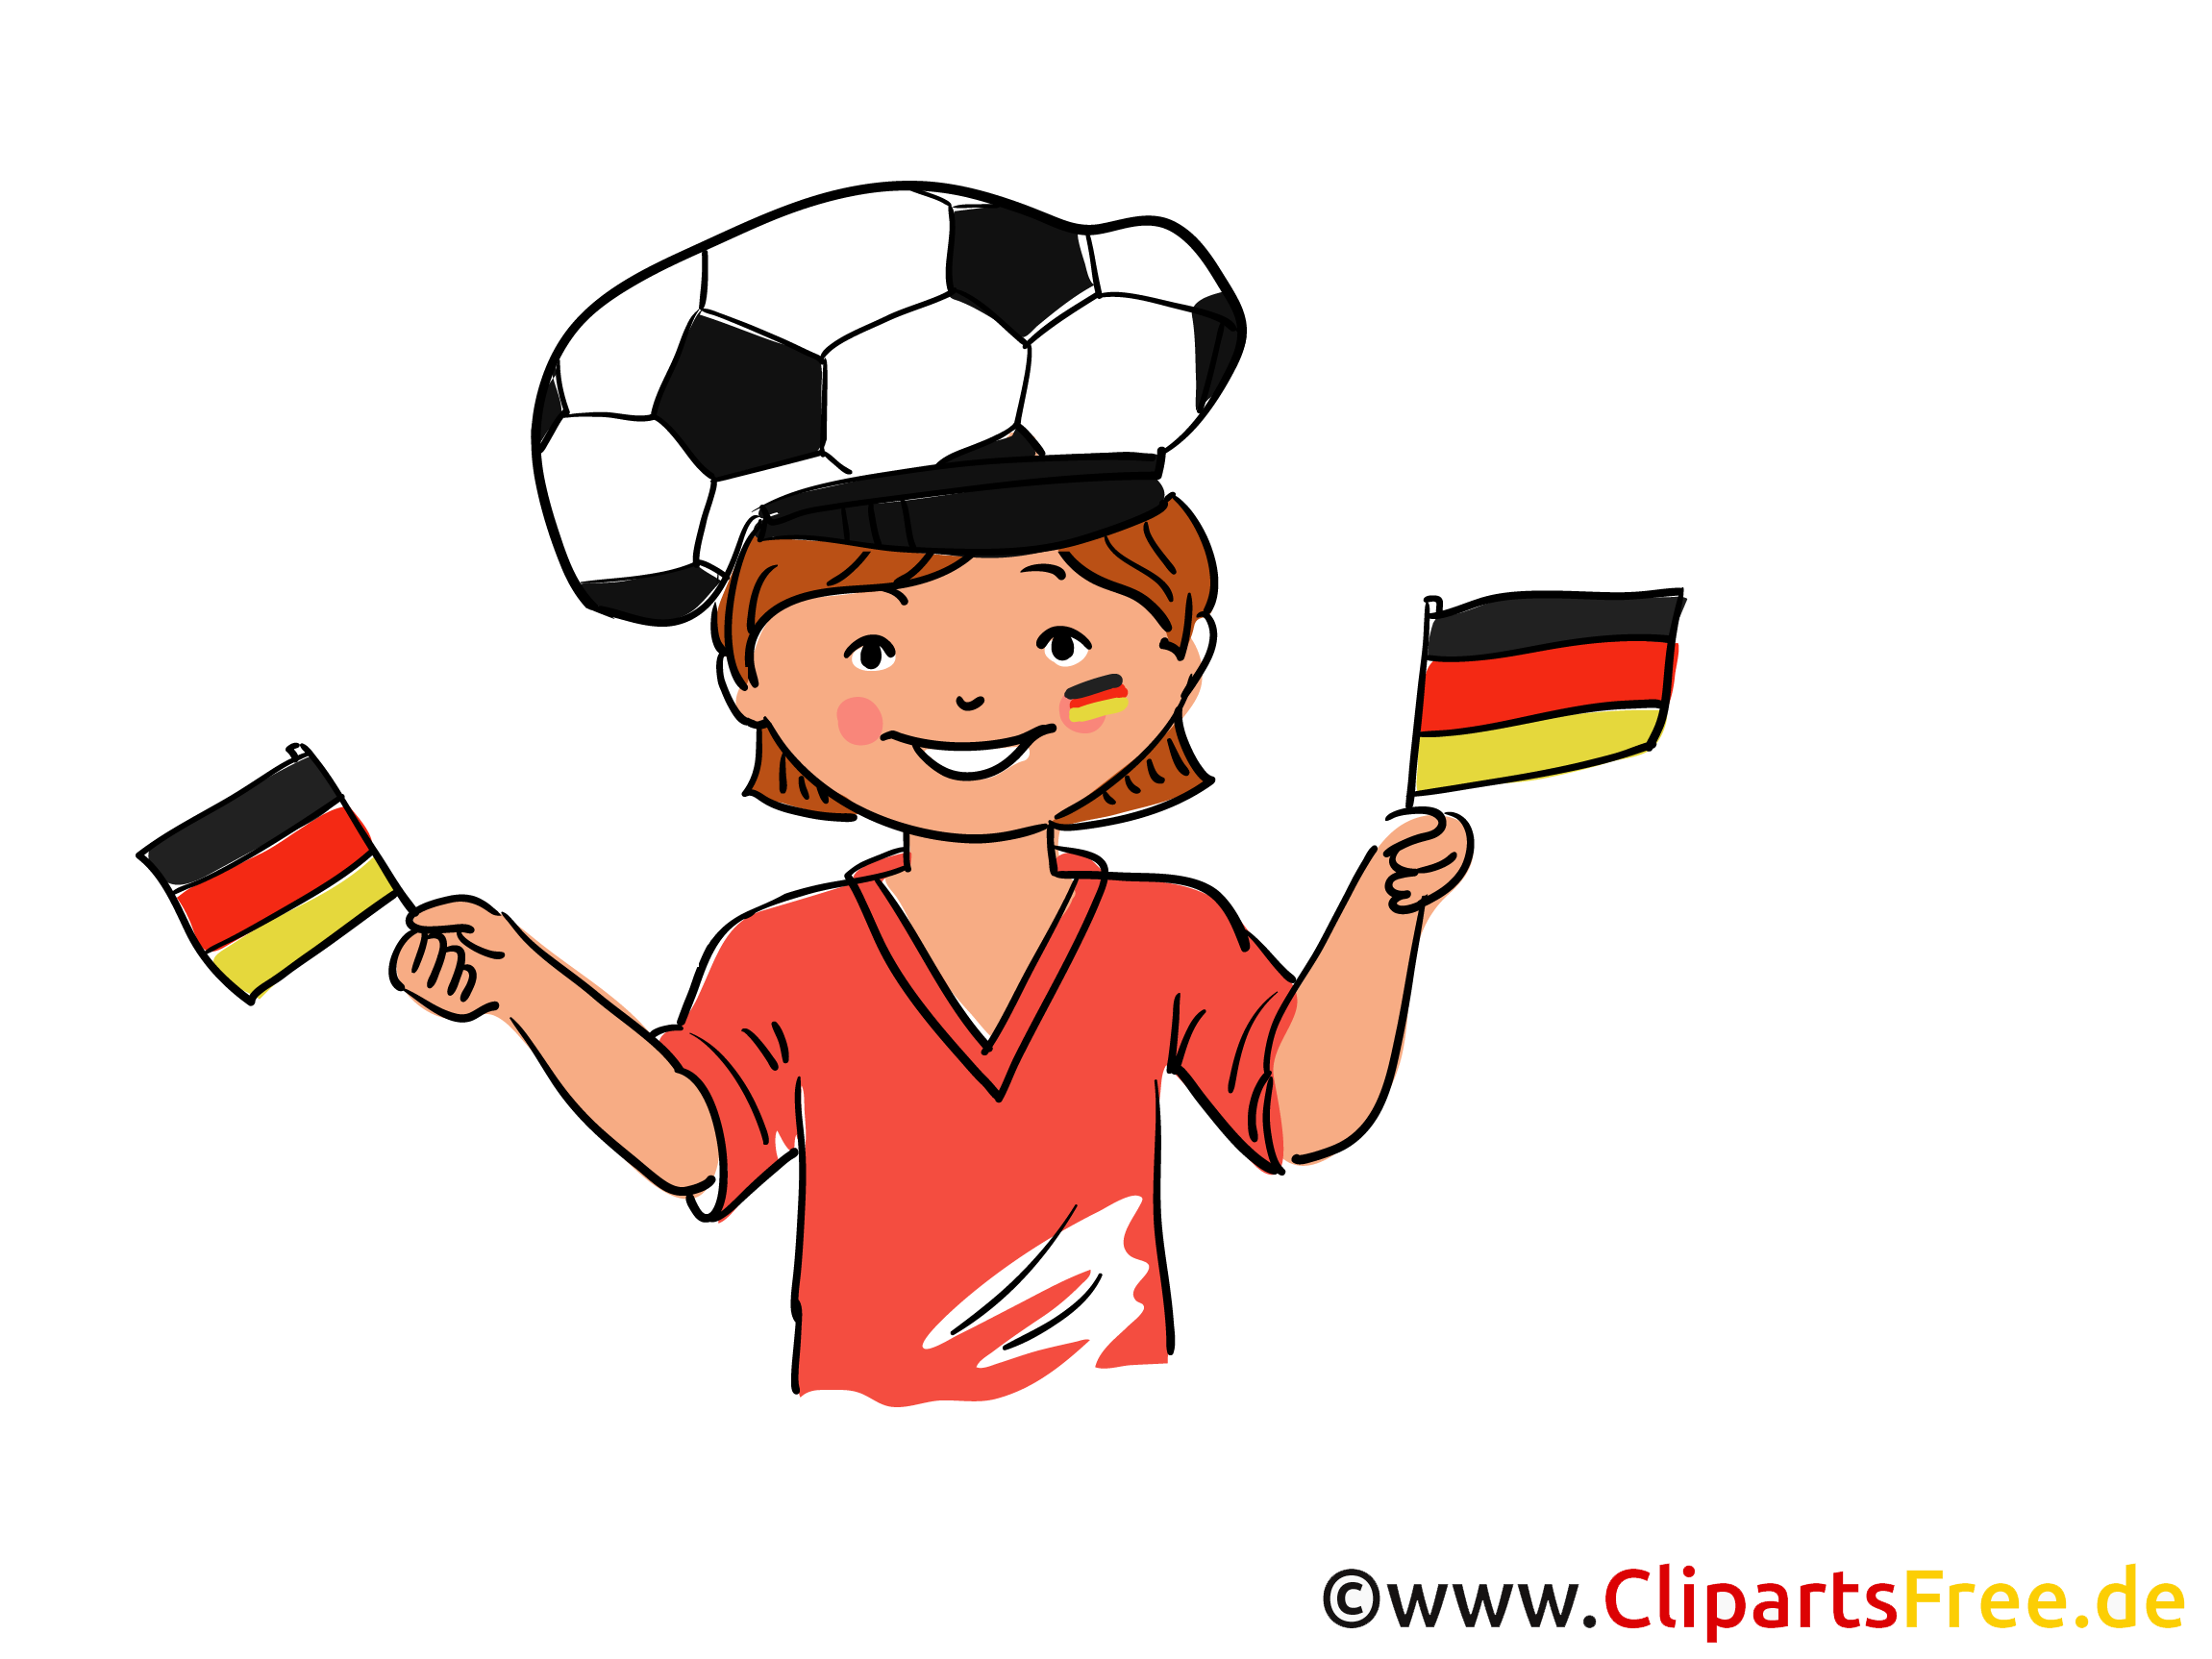 clipart fußball kostenlos download - photo #11